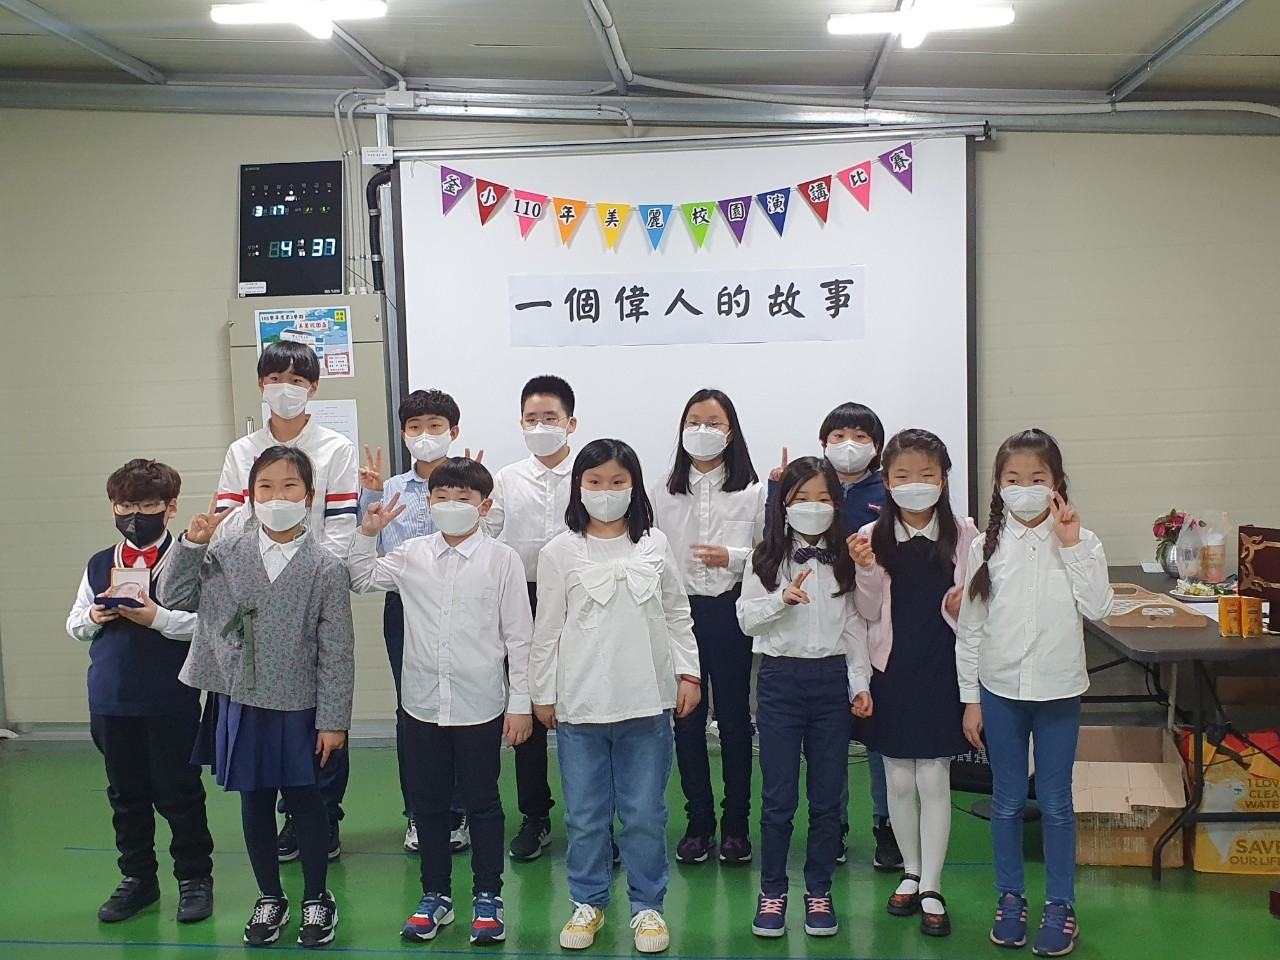 釜山華僑小學   2021 美麗校園盃中文演講比賽圖片